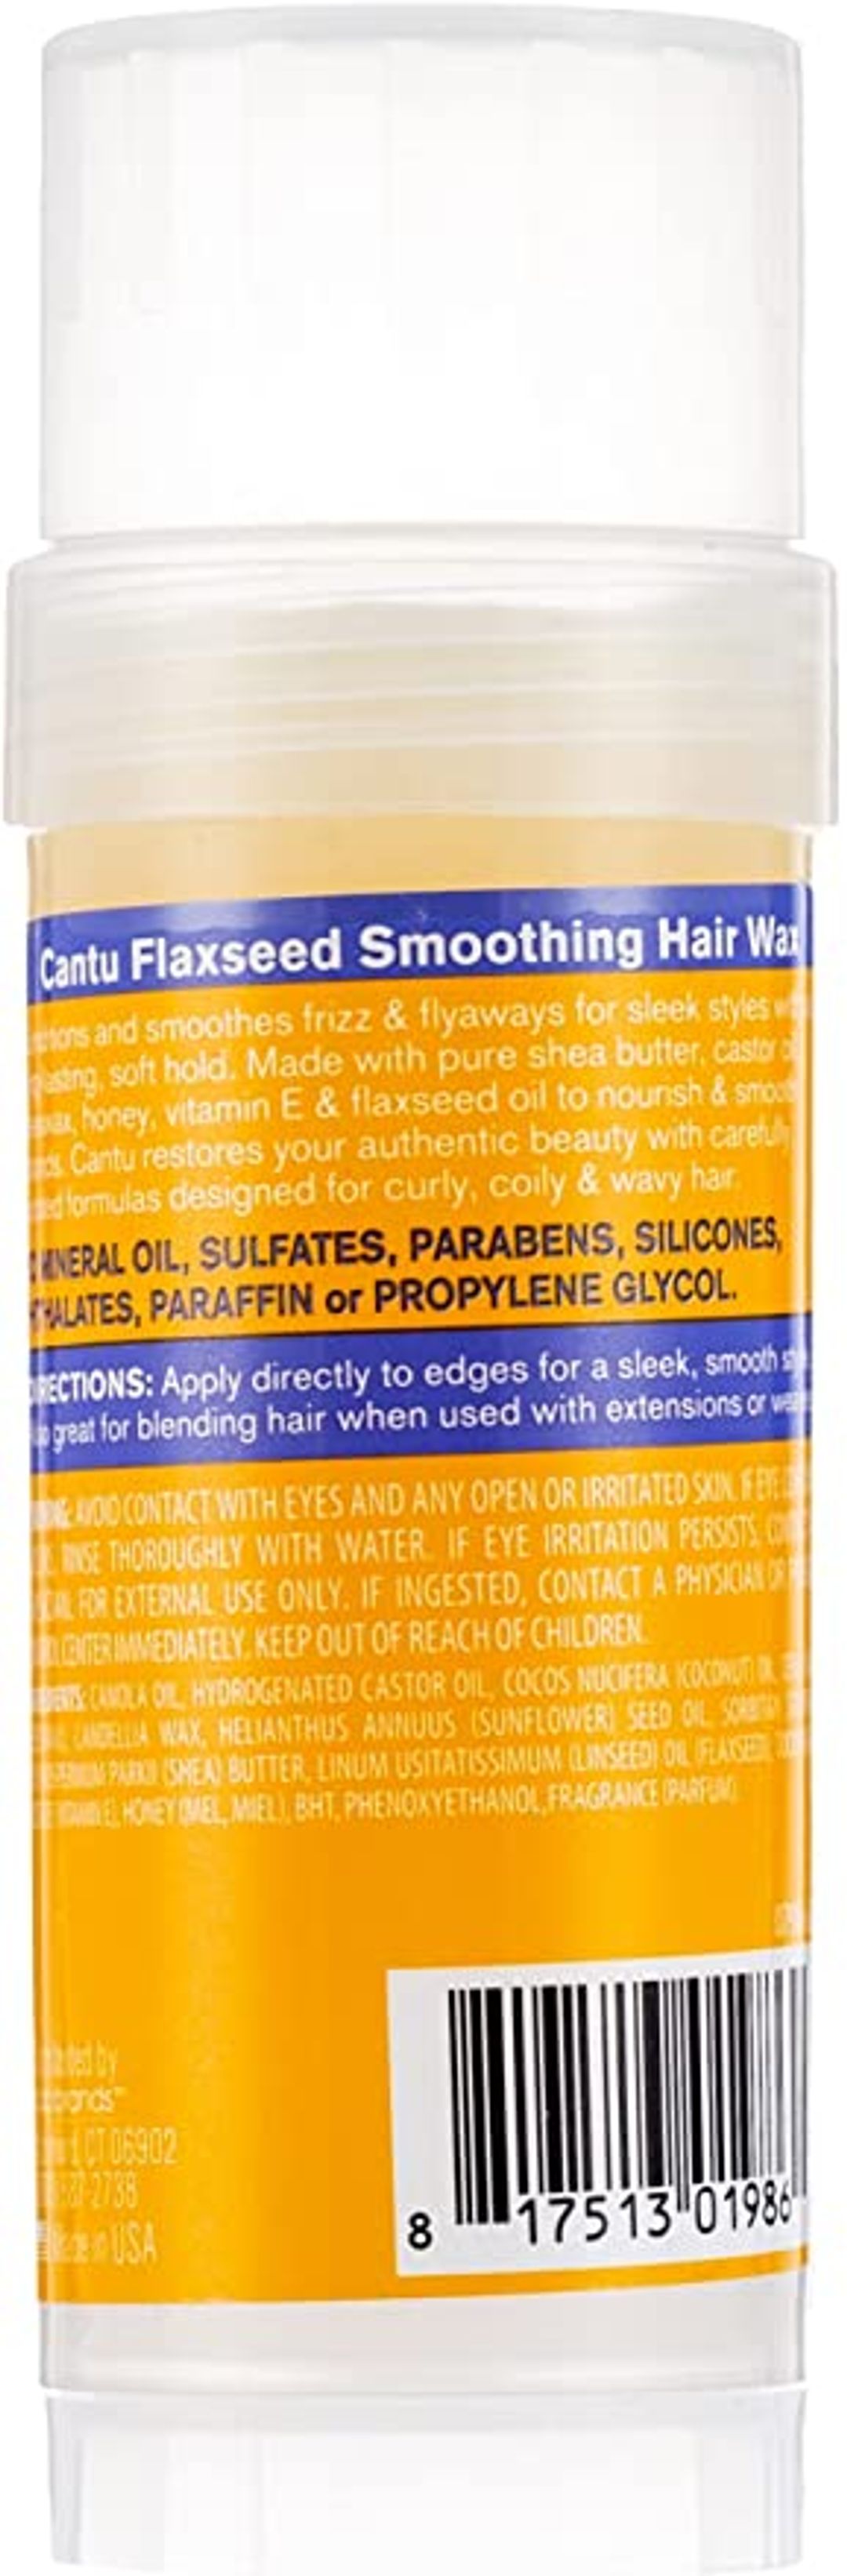 Cantu Flaxseed Smoothing Hair Wax - 56g